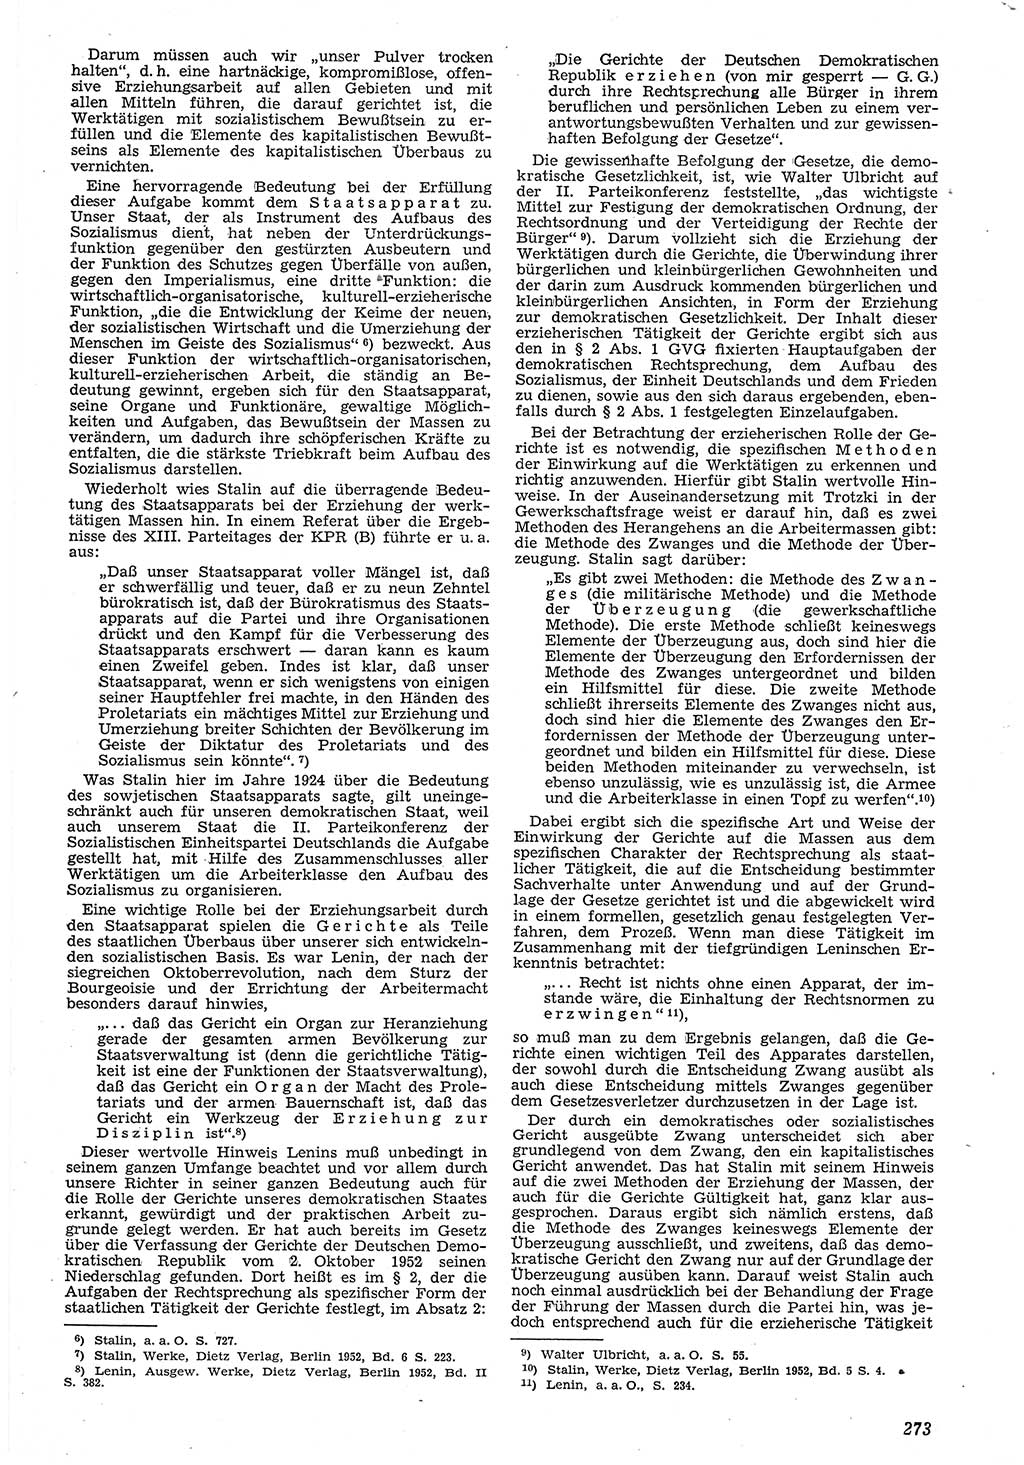 Neue Justiz (NJ), Zeitschrift für Recht und Rechtswissenschaft [Deutsche Demokratische Republik (DDR)], 7. Jahrgang 1953, Seite 273 (NJ DDR 1953, S. 273)